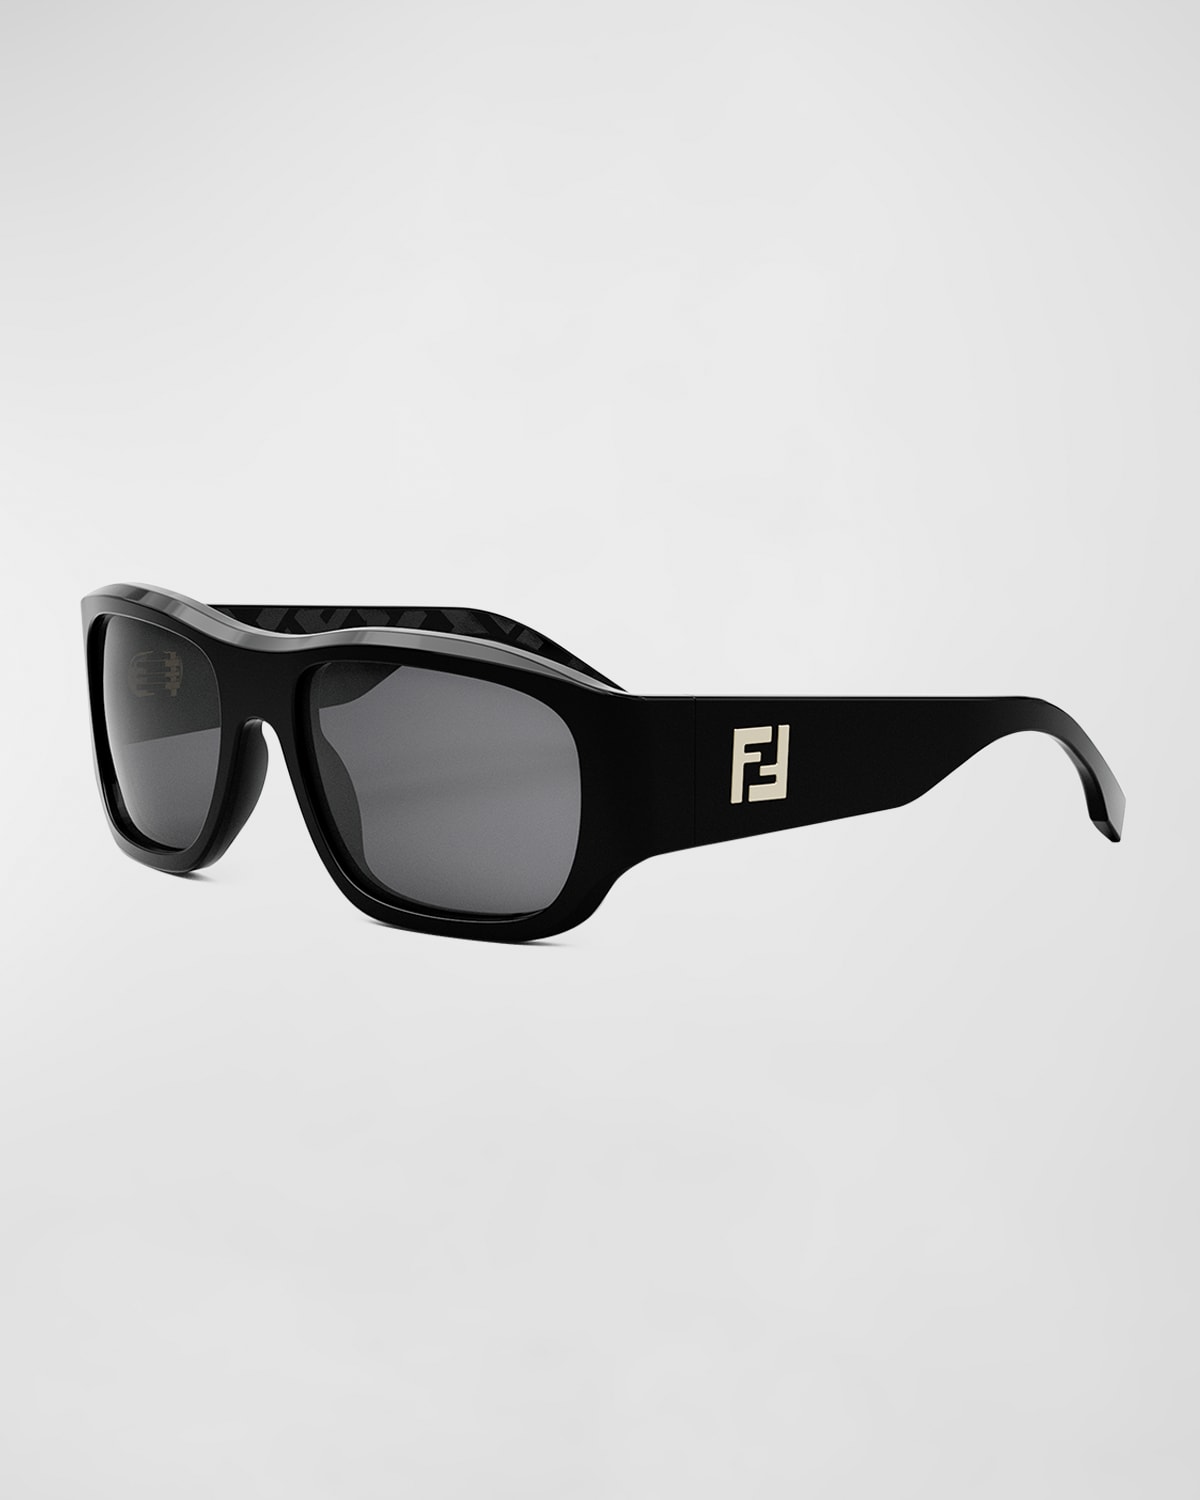 Fendi Men's Ff Squared 56mm Rectangular Sunglasses In Sblksmk